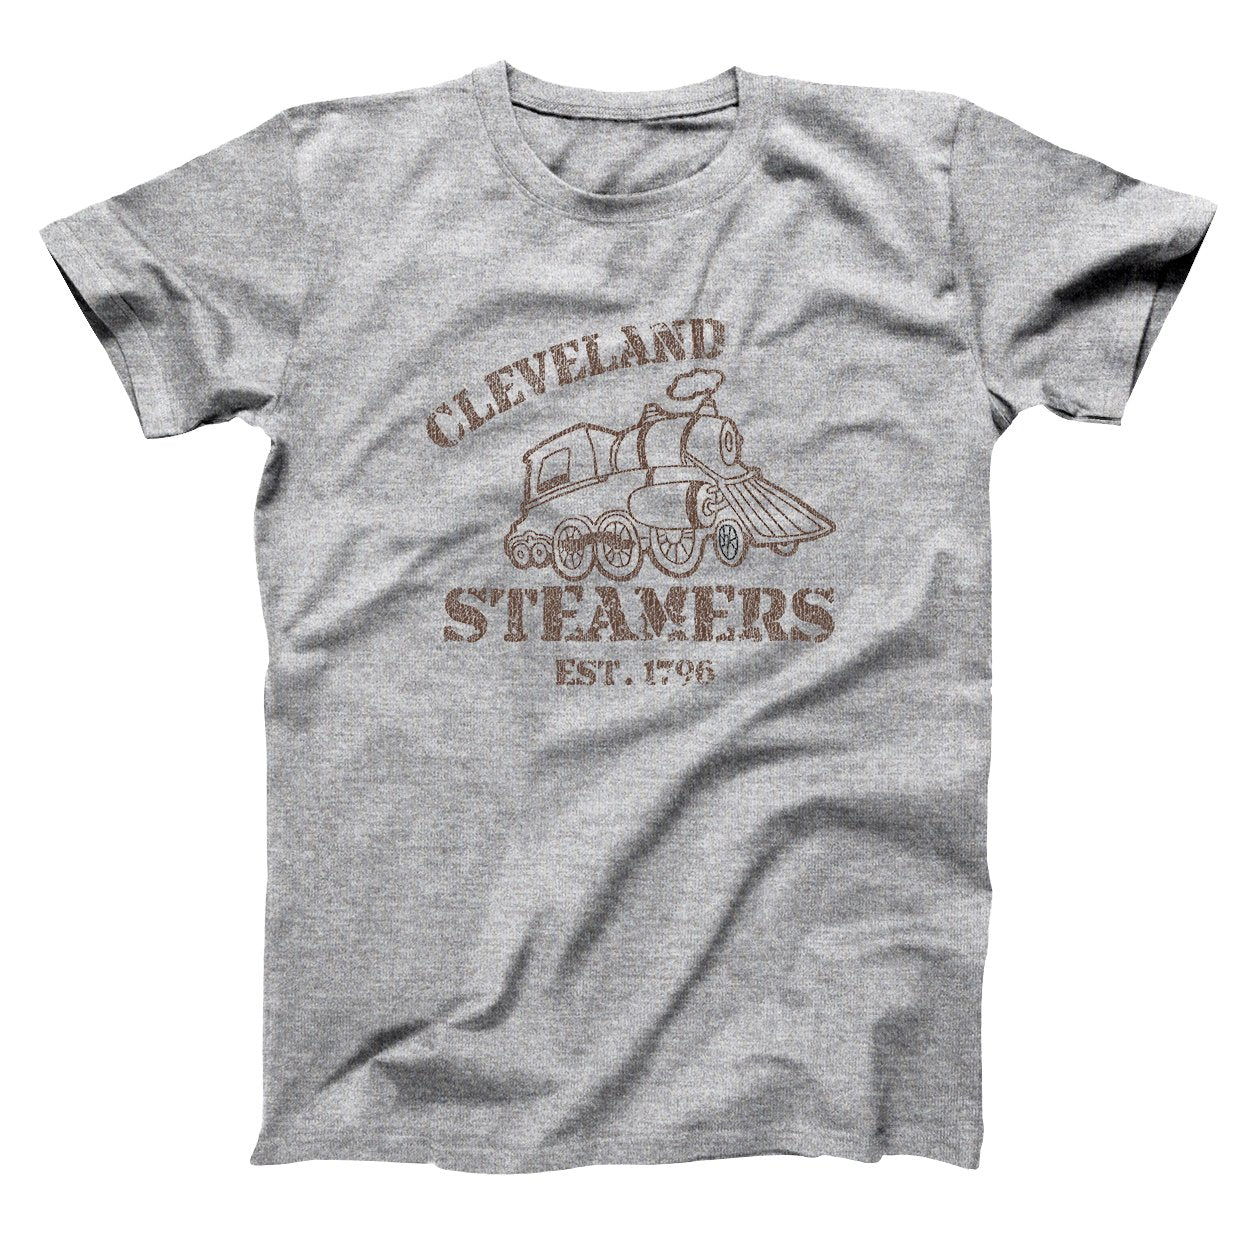 Cleveland Steamers Est 1796 Men's T-Shirt